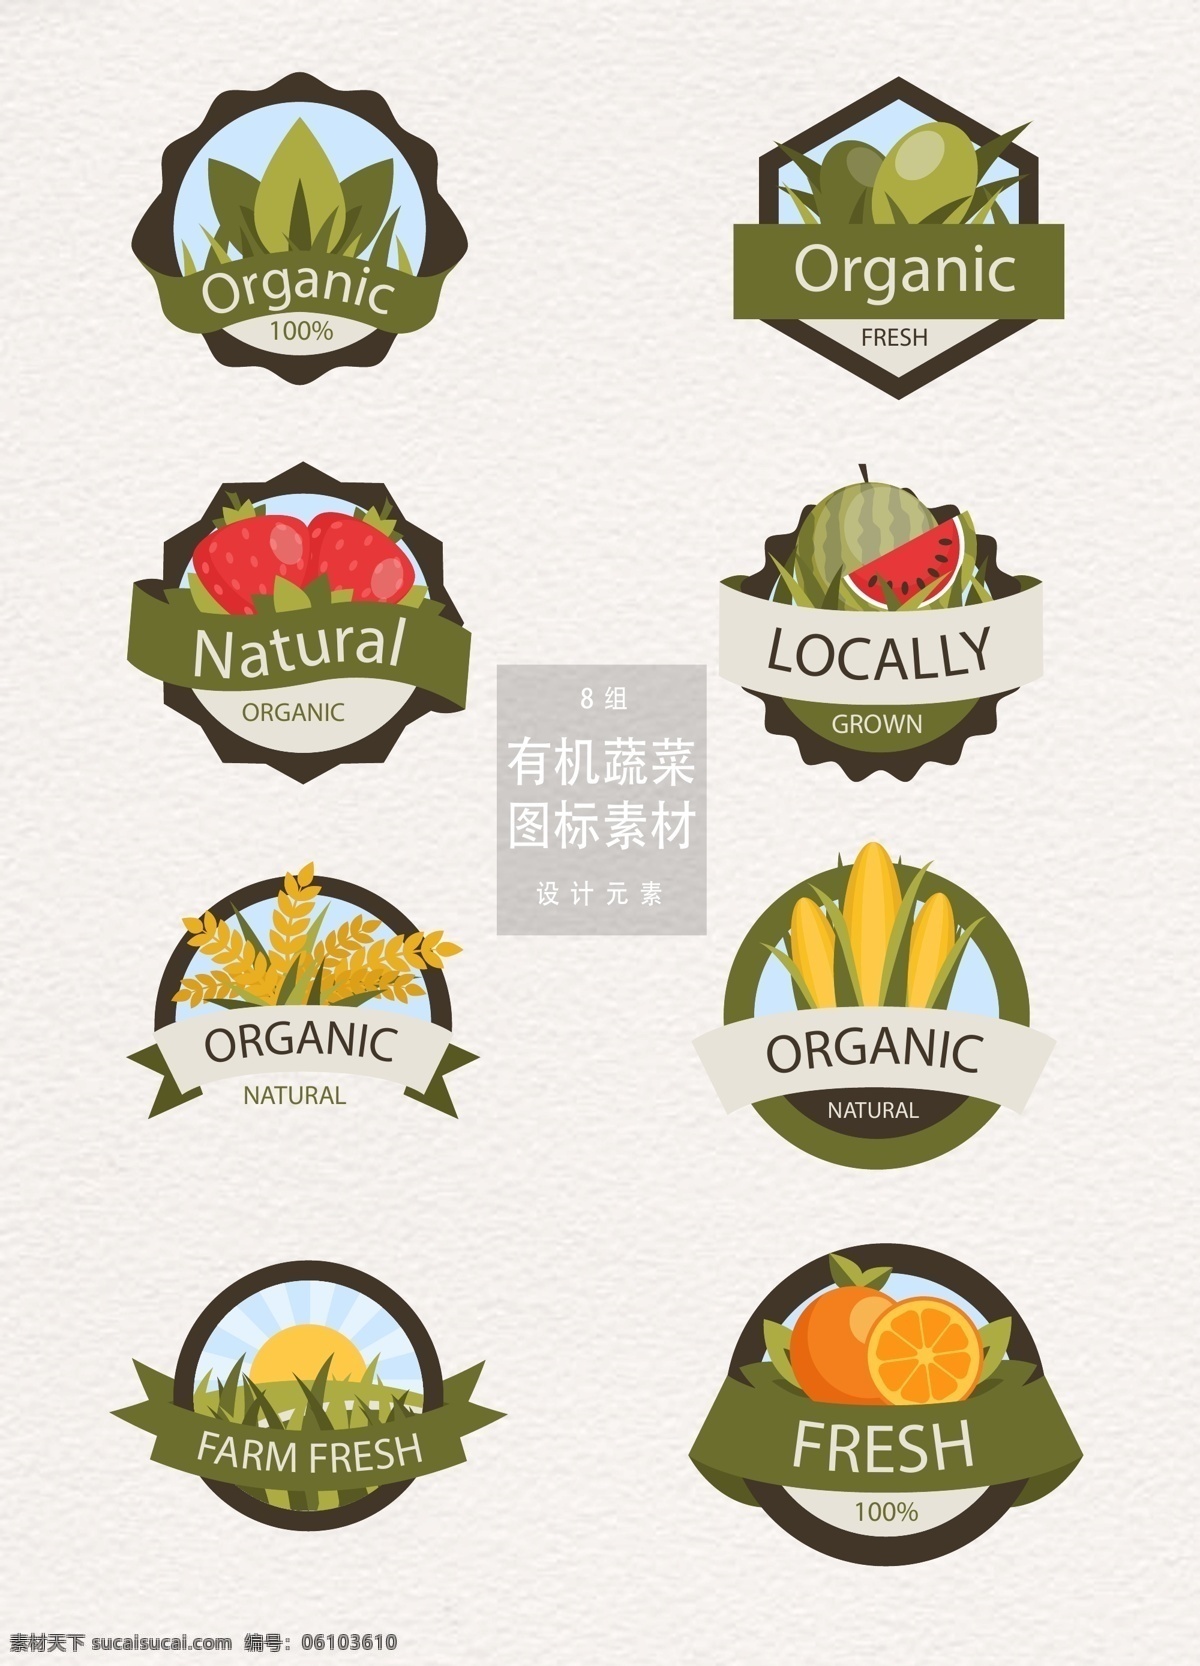 有机 蔬菜 图标 设计素材 自然 丝带 草莓 橙子 有机蔬菜 有机蔬菜图标 蔬菜图标 图标设计 天然 农作物 水果 西瓜 橄榄